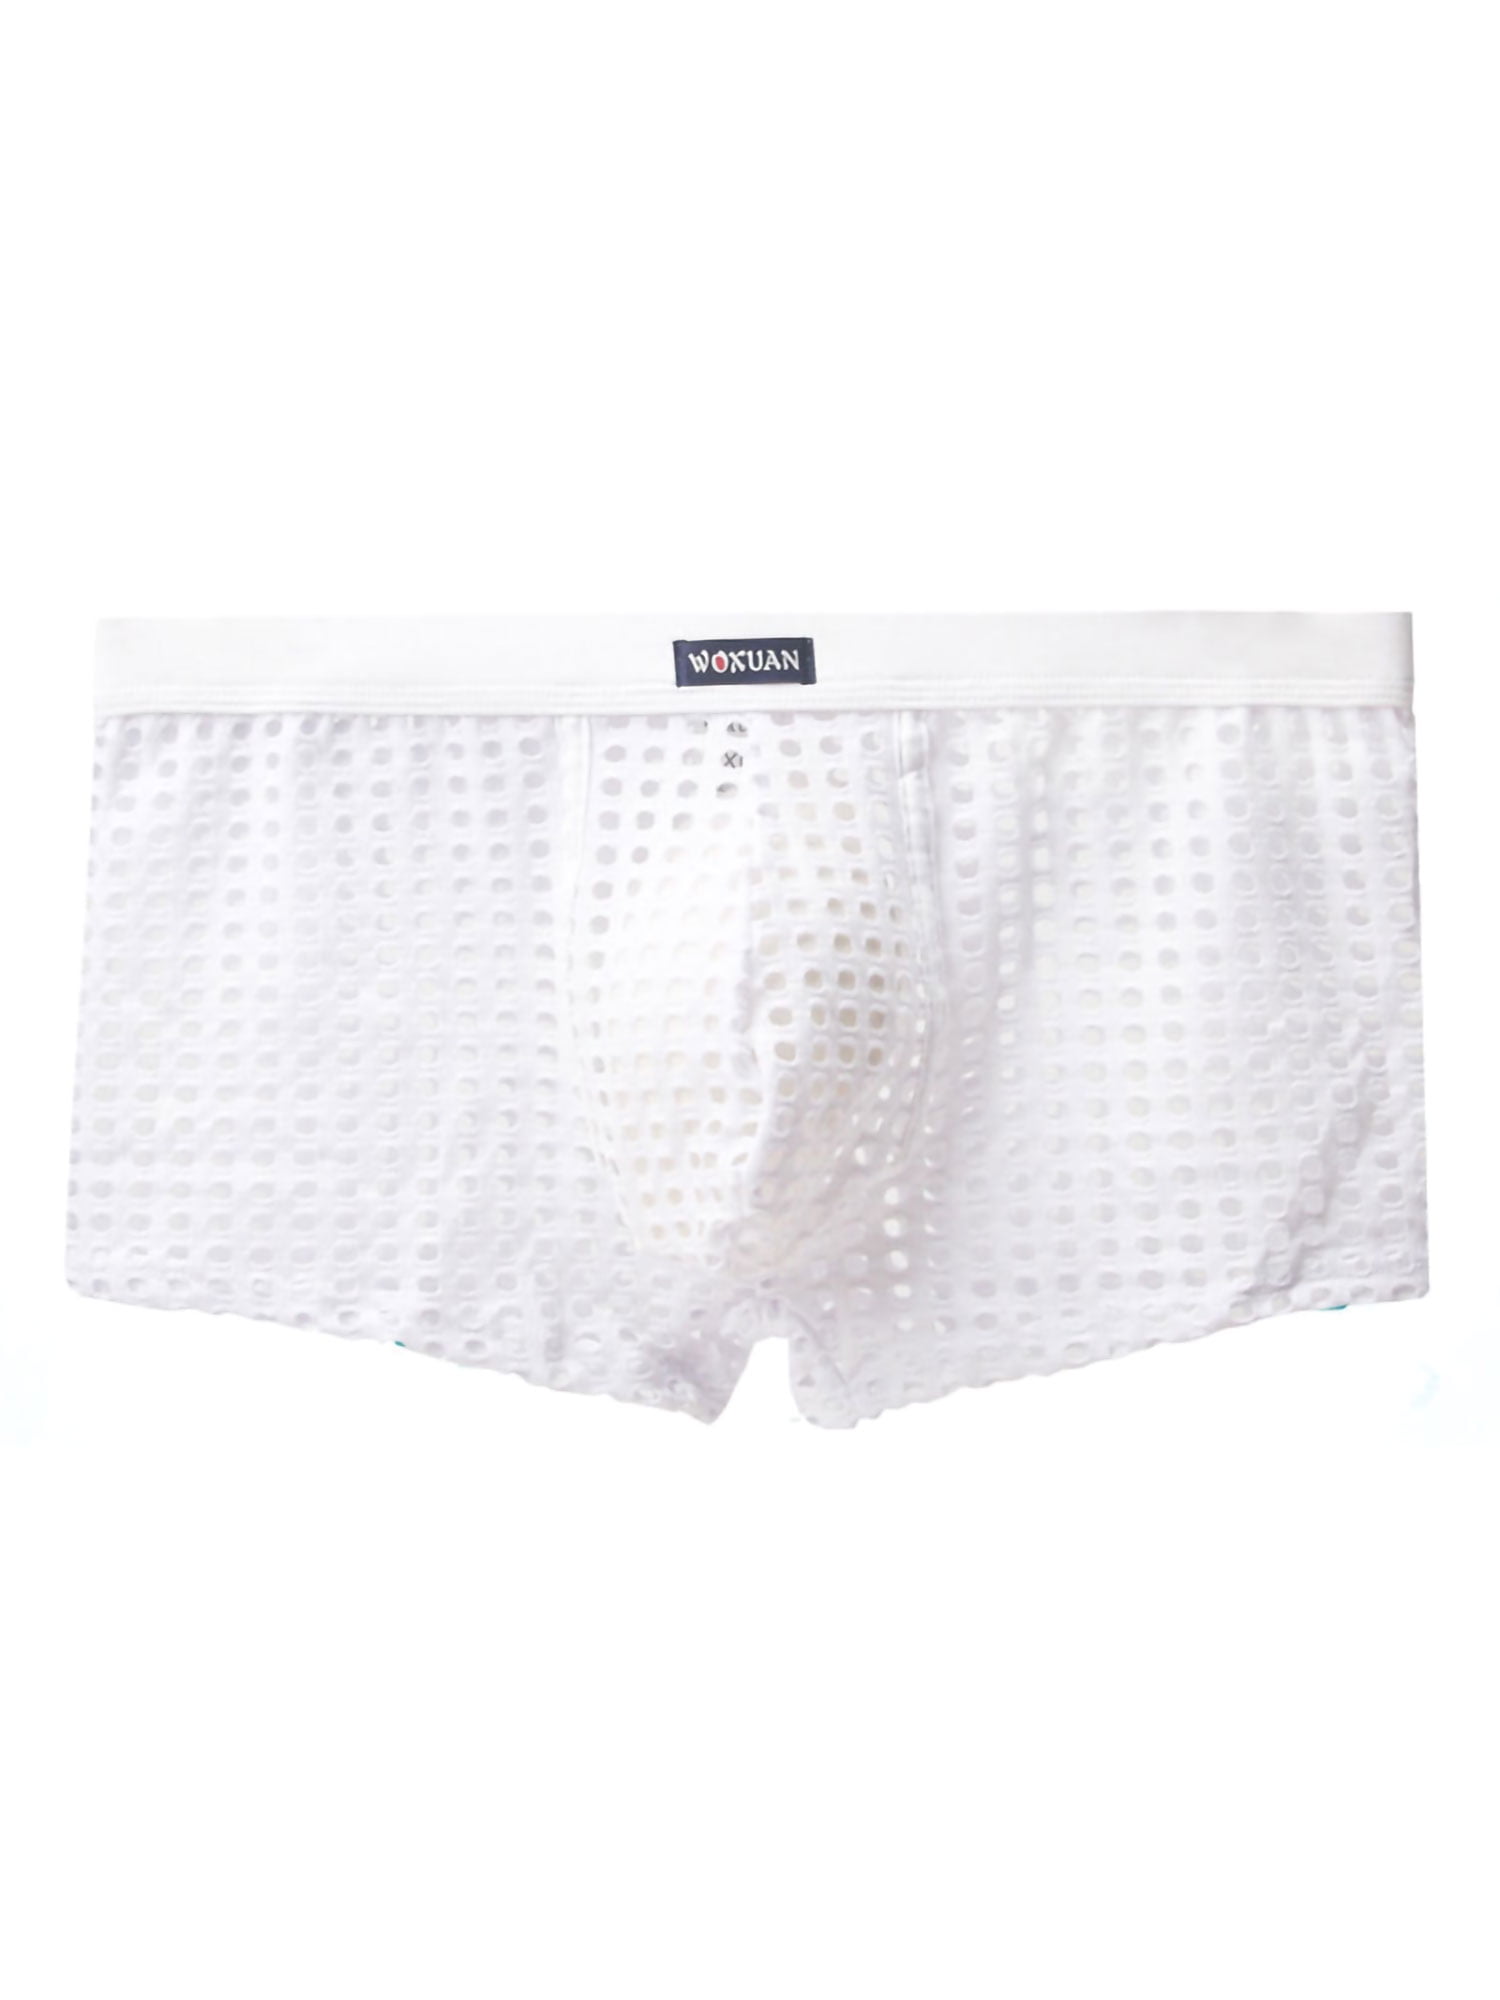 Mens Mesh Trunks Shorts Gridding See Through Boxer Briefs Swimwear Underwear 